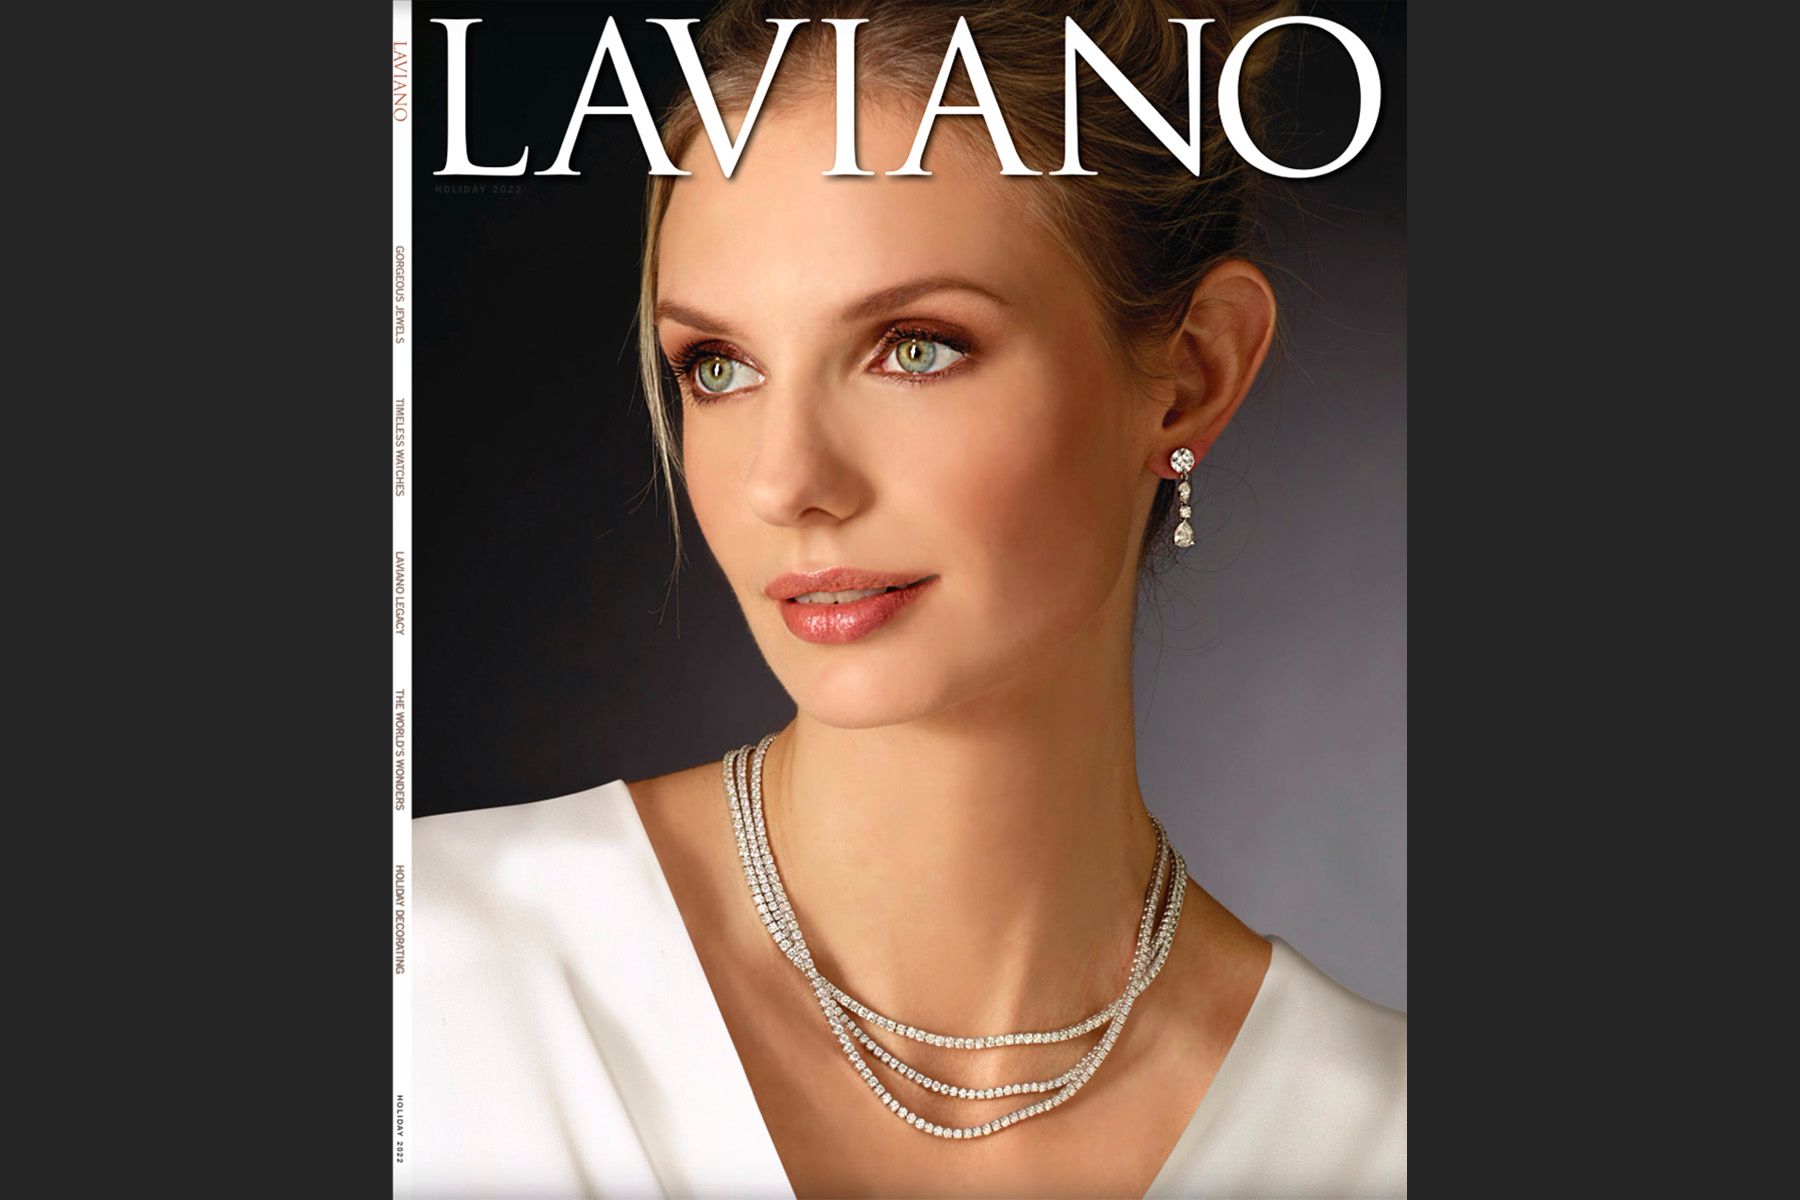 Laviano Cover w22.jpg